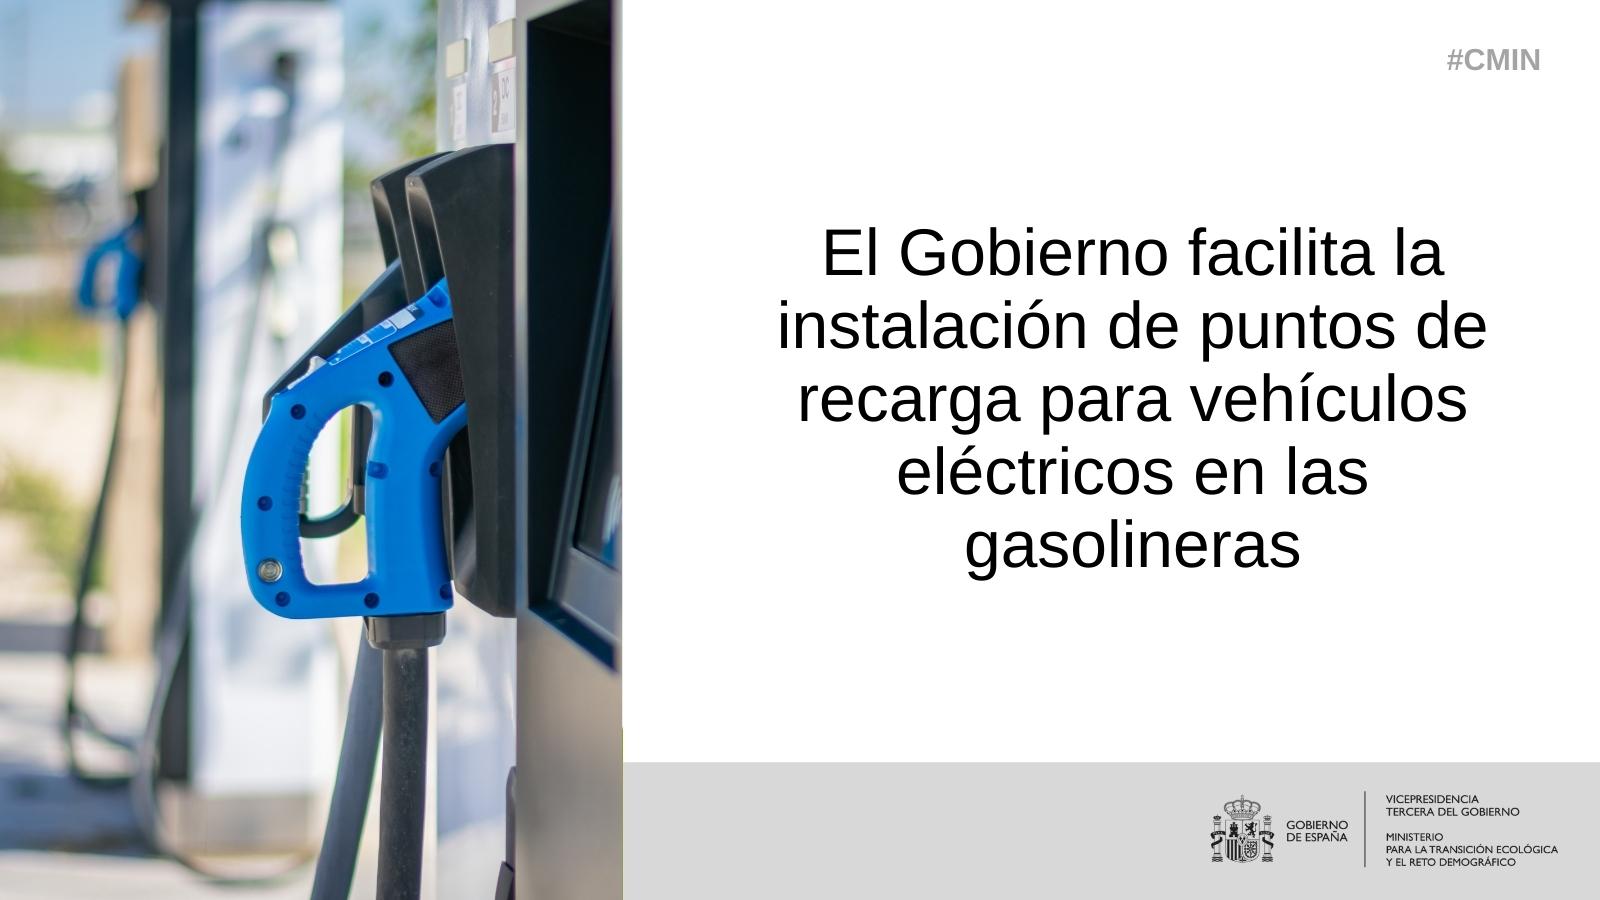 El Gobierno facilita la instalación de puntos de recarga para vehículos eléctricos en las gasolineras